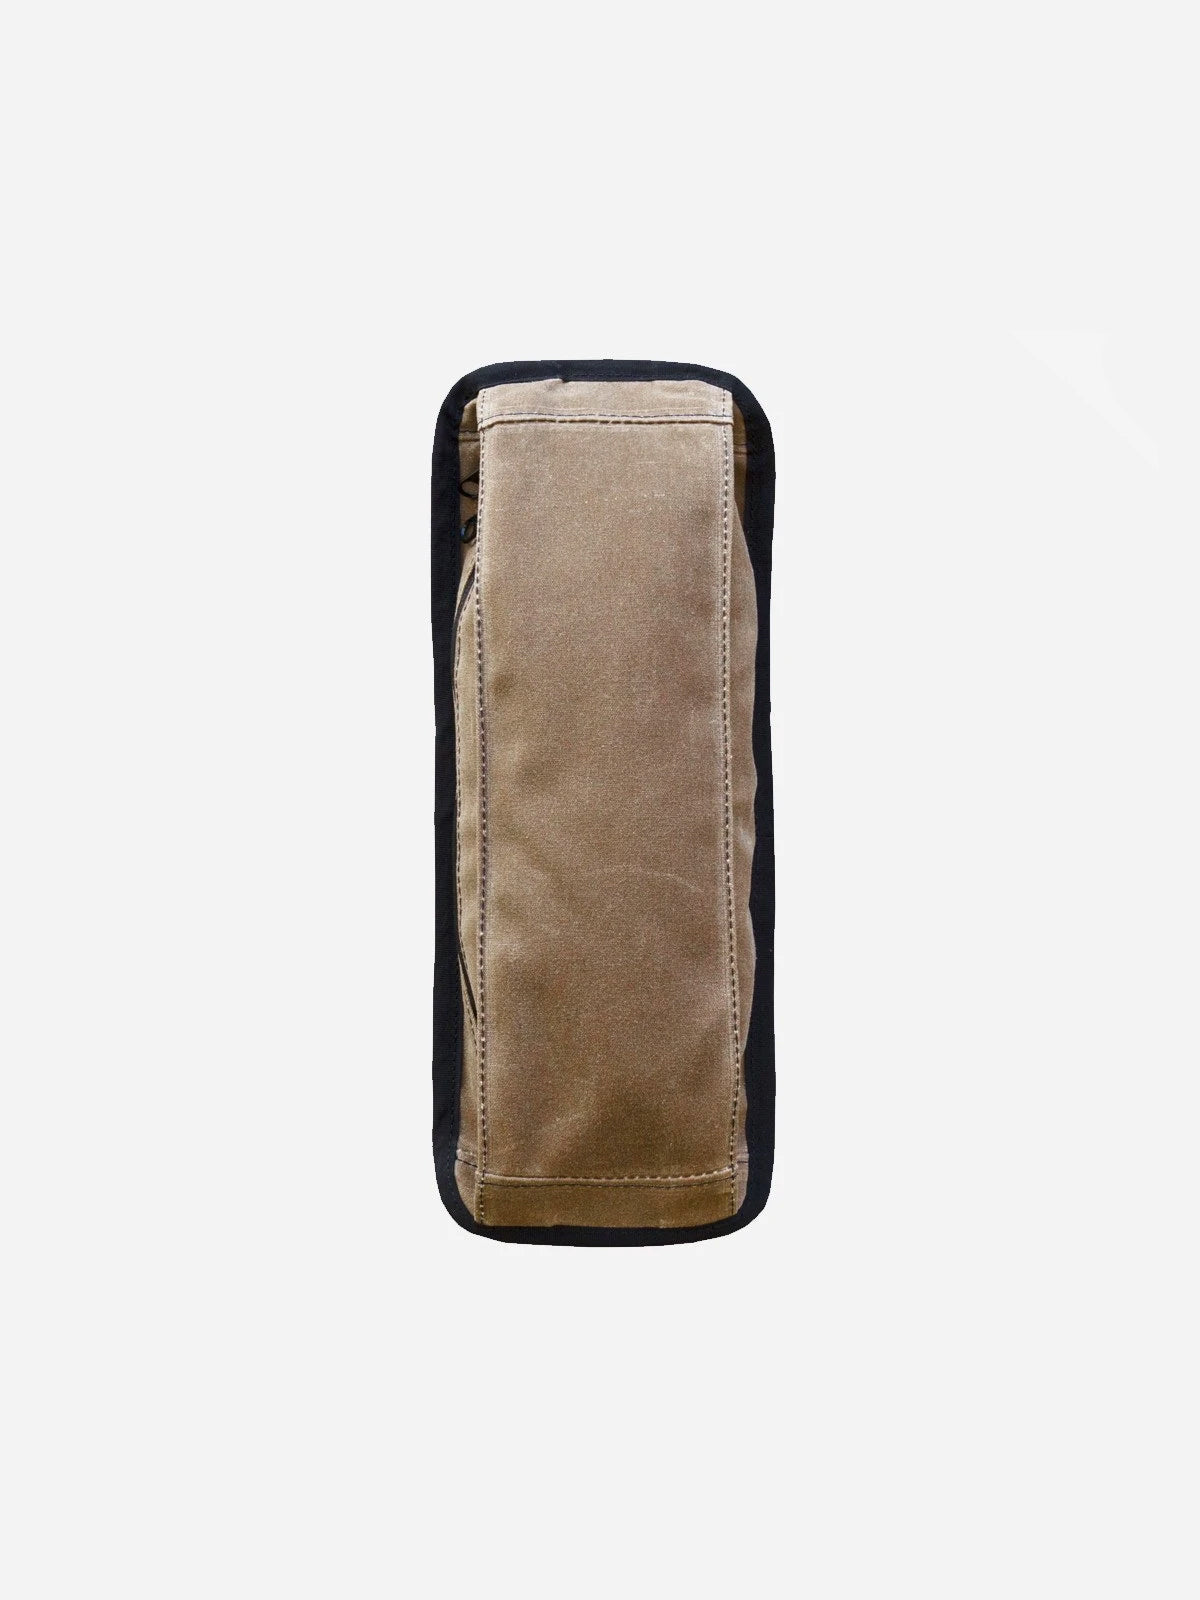 Arkiv Vertical Zippered Pocket från Mission Workshop - vädertåliga väskor och tekniska kläder - San Francisco och Los Angeles - byggda för att tåla - garanterade för alltid